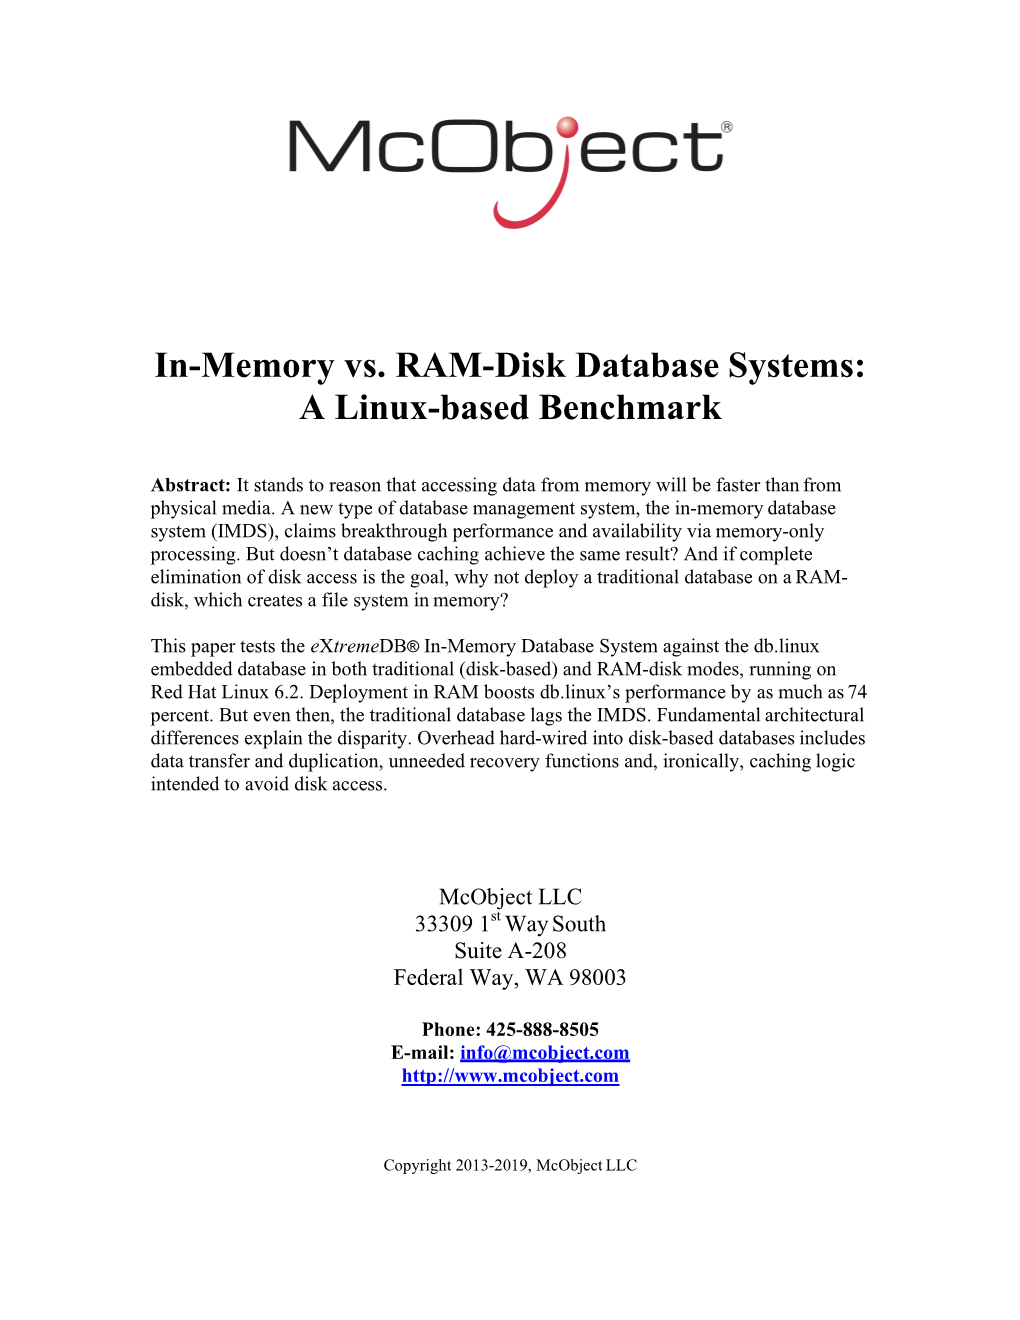 Memory Vs. RAM-Disk Databases